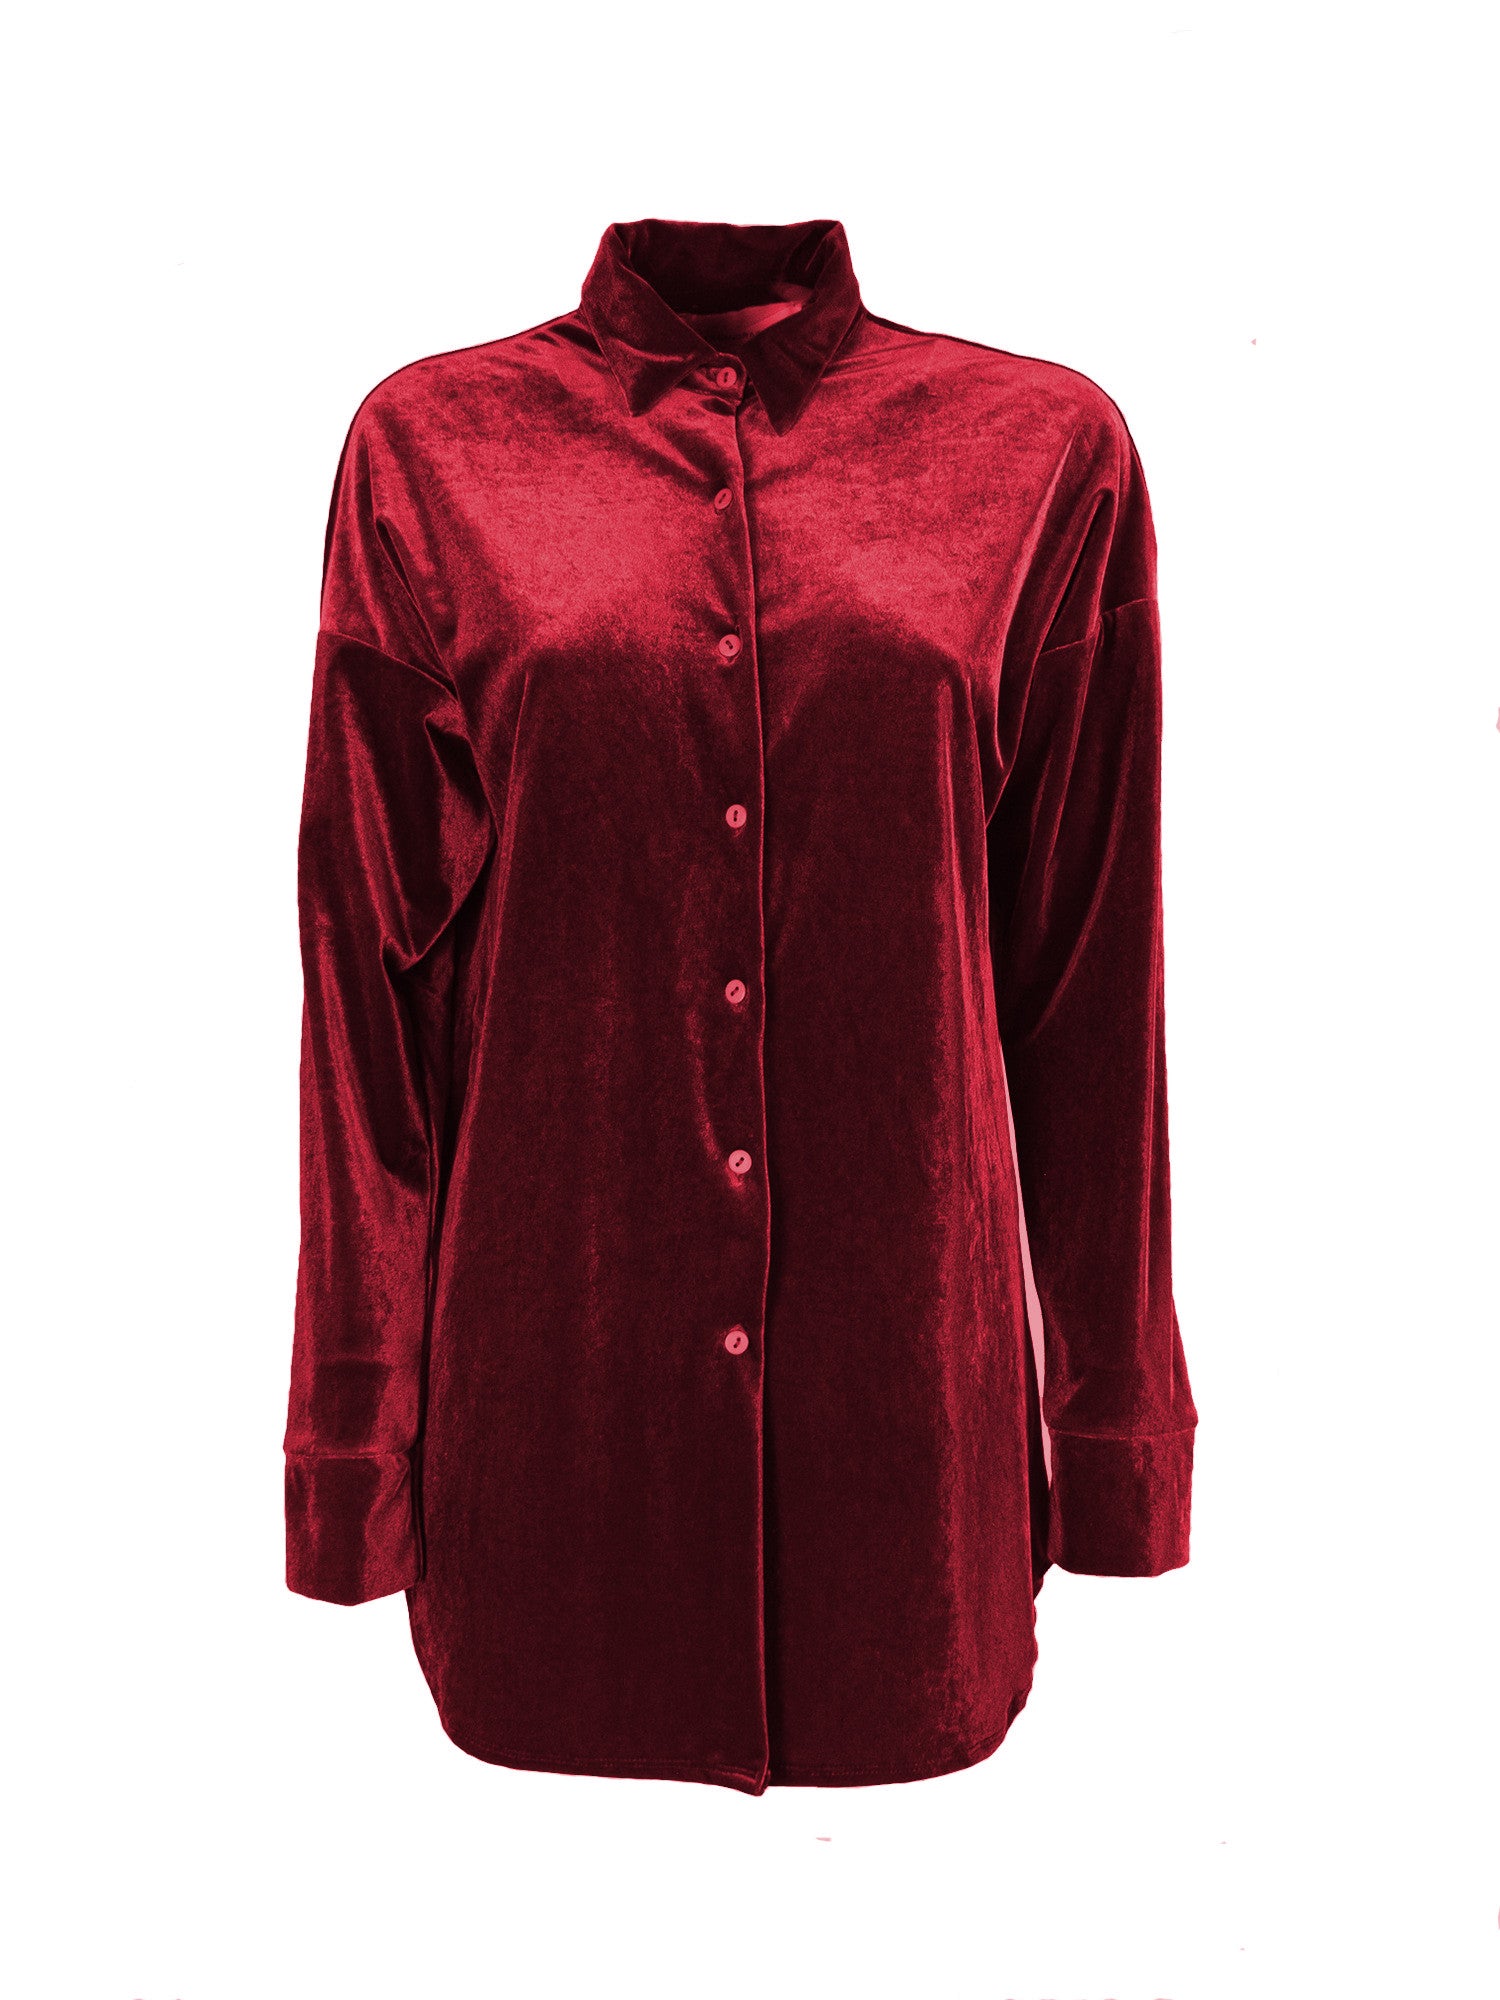 CELESTE - red chenille shirt